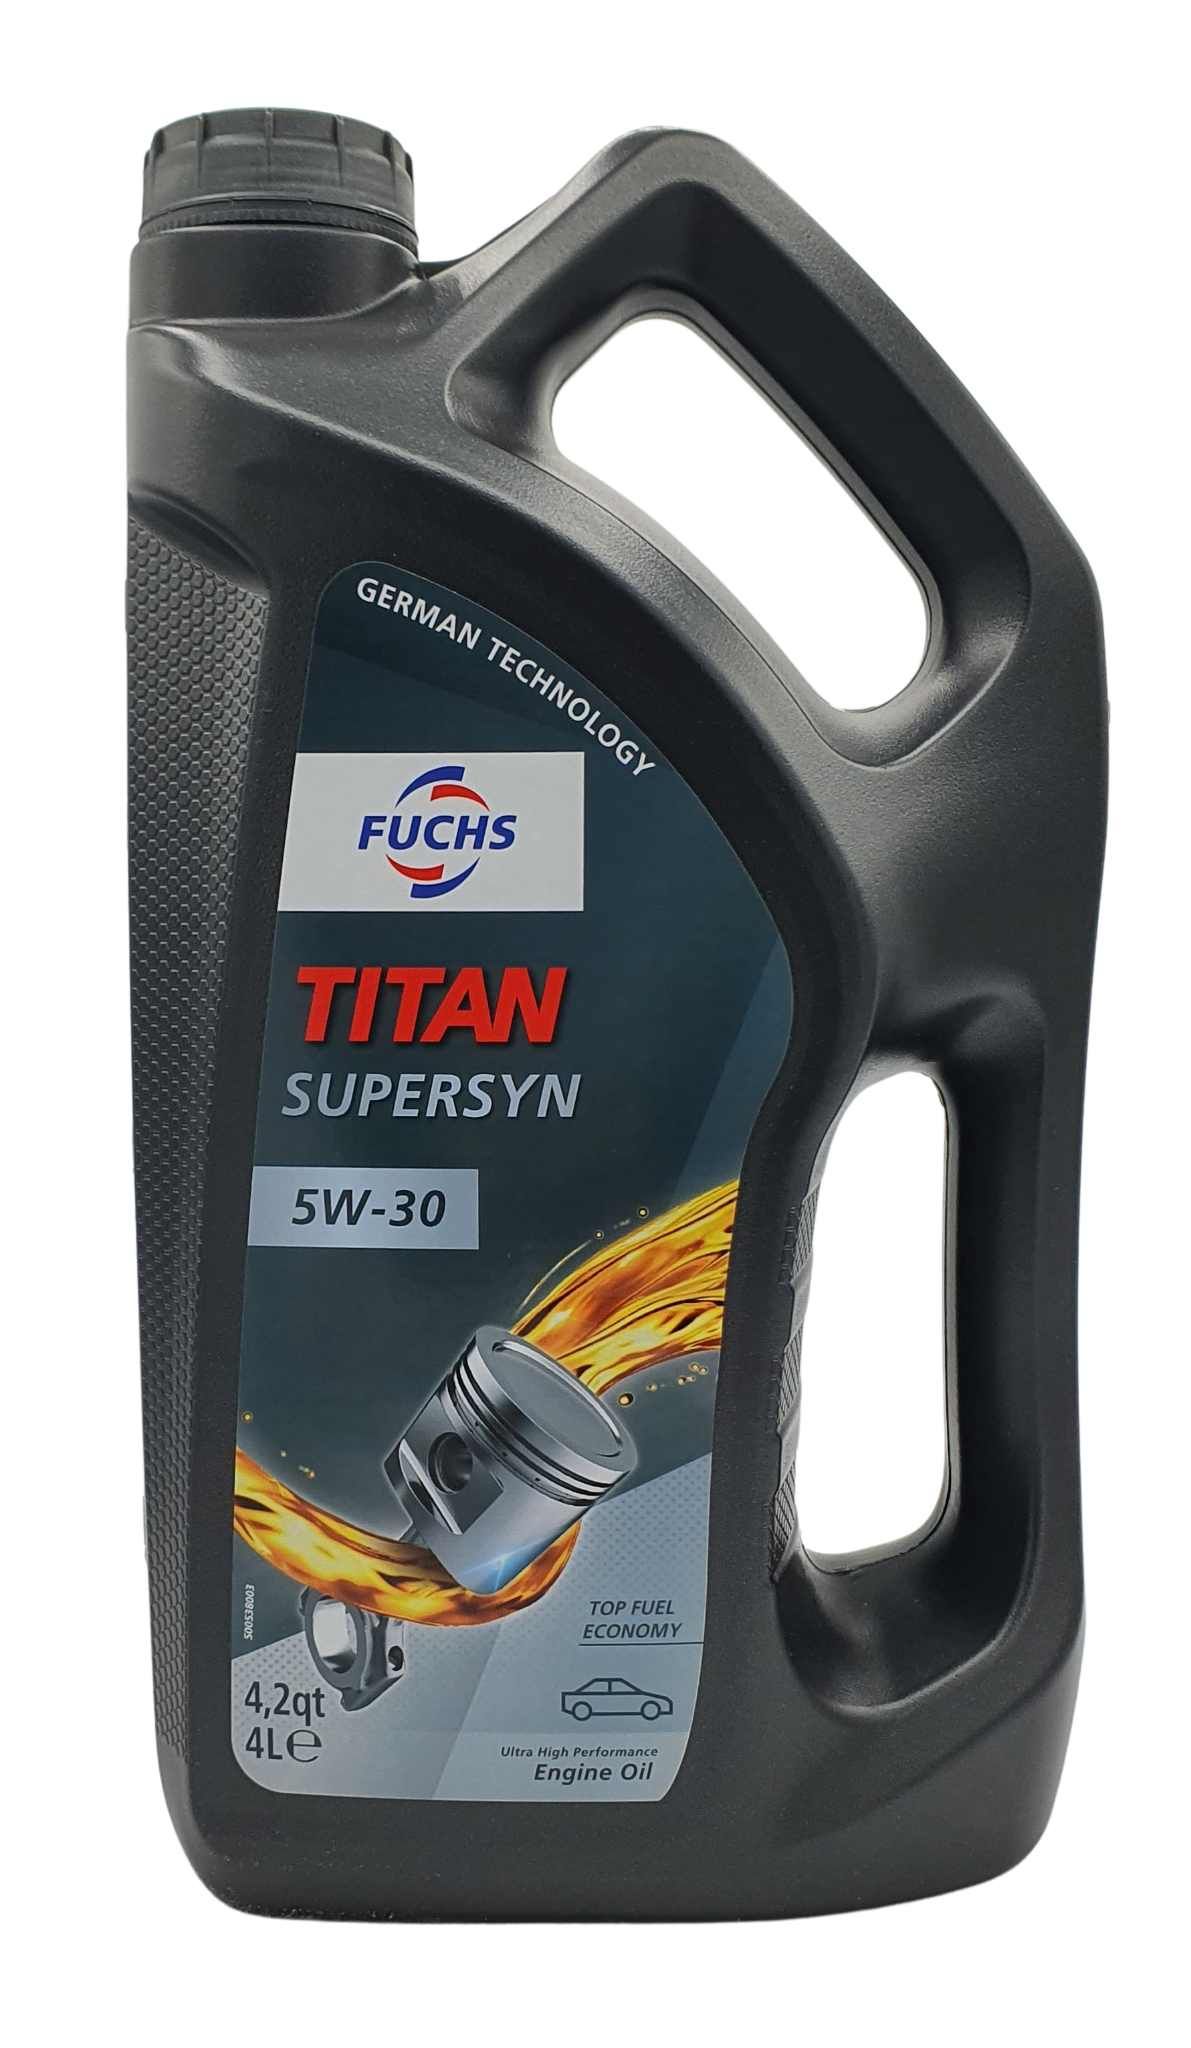 Fuchs Titan Supersyn 5W-30 4 Liter